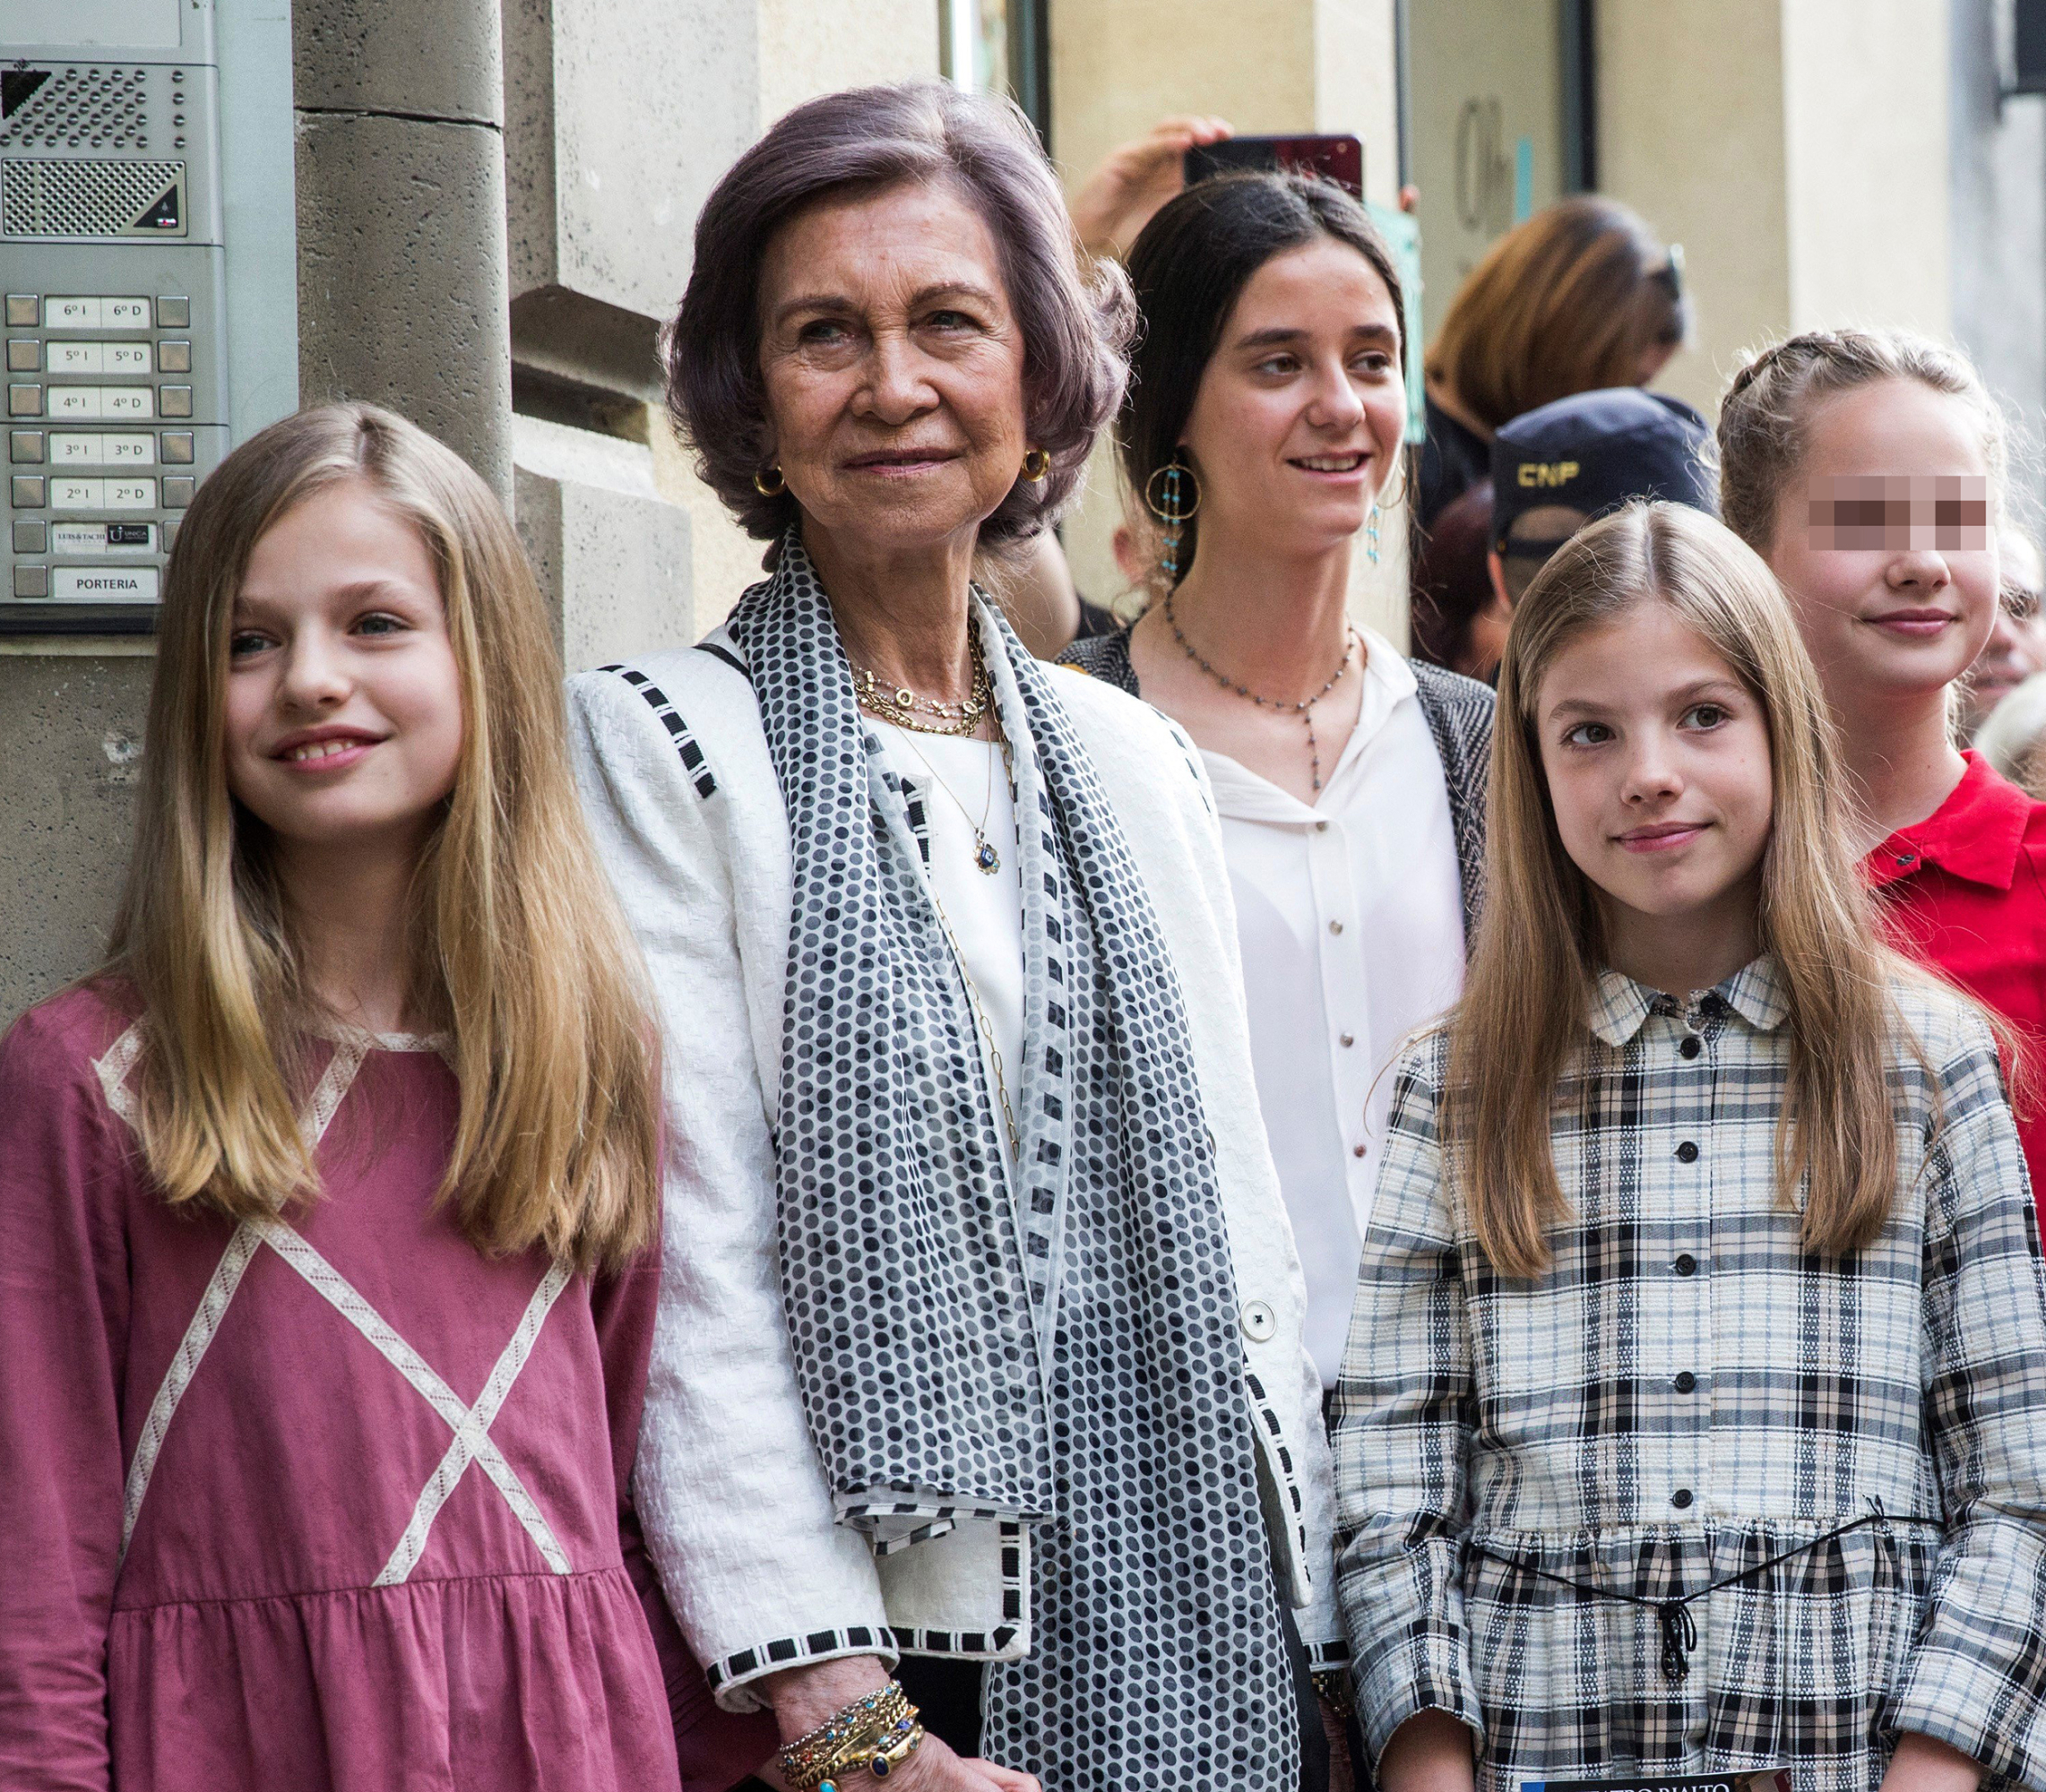 La Reina Letizia y la Reina Sofía, junto a la princesa de Asturias y la infanta Sofía, Victoria Federica, Irene Urdangarín y la madre de la reina, Paloma Rocasolano